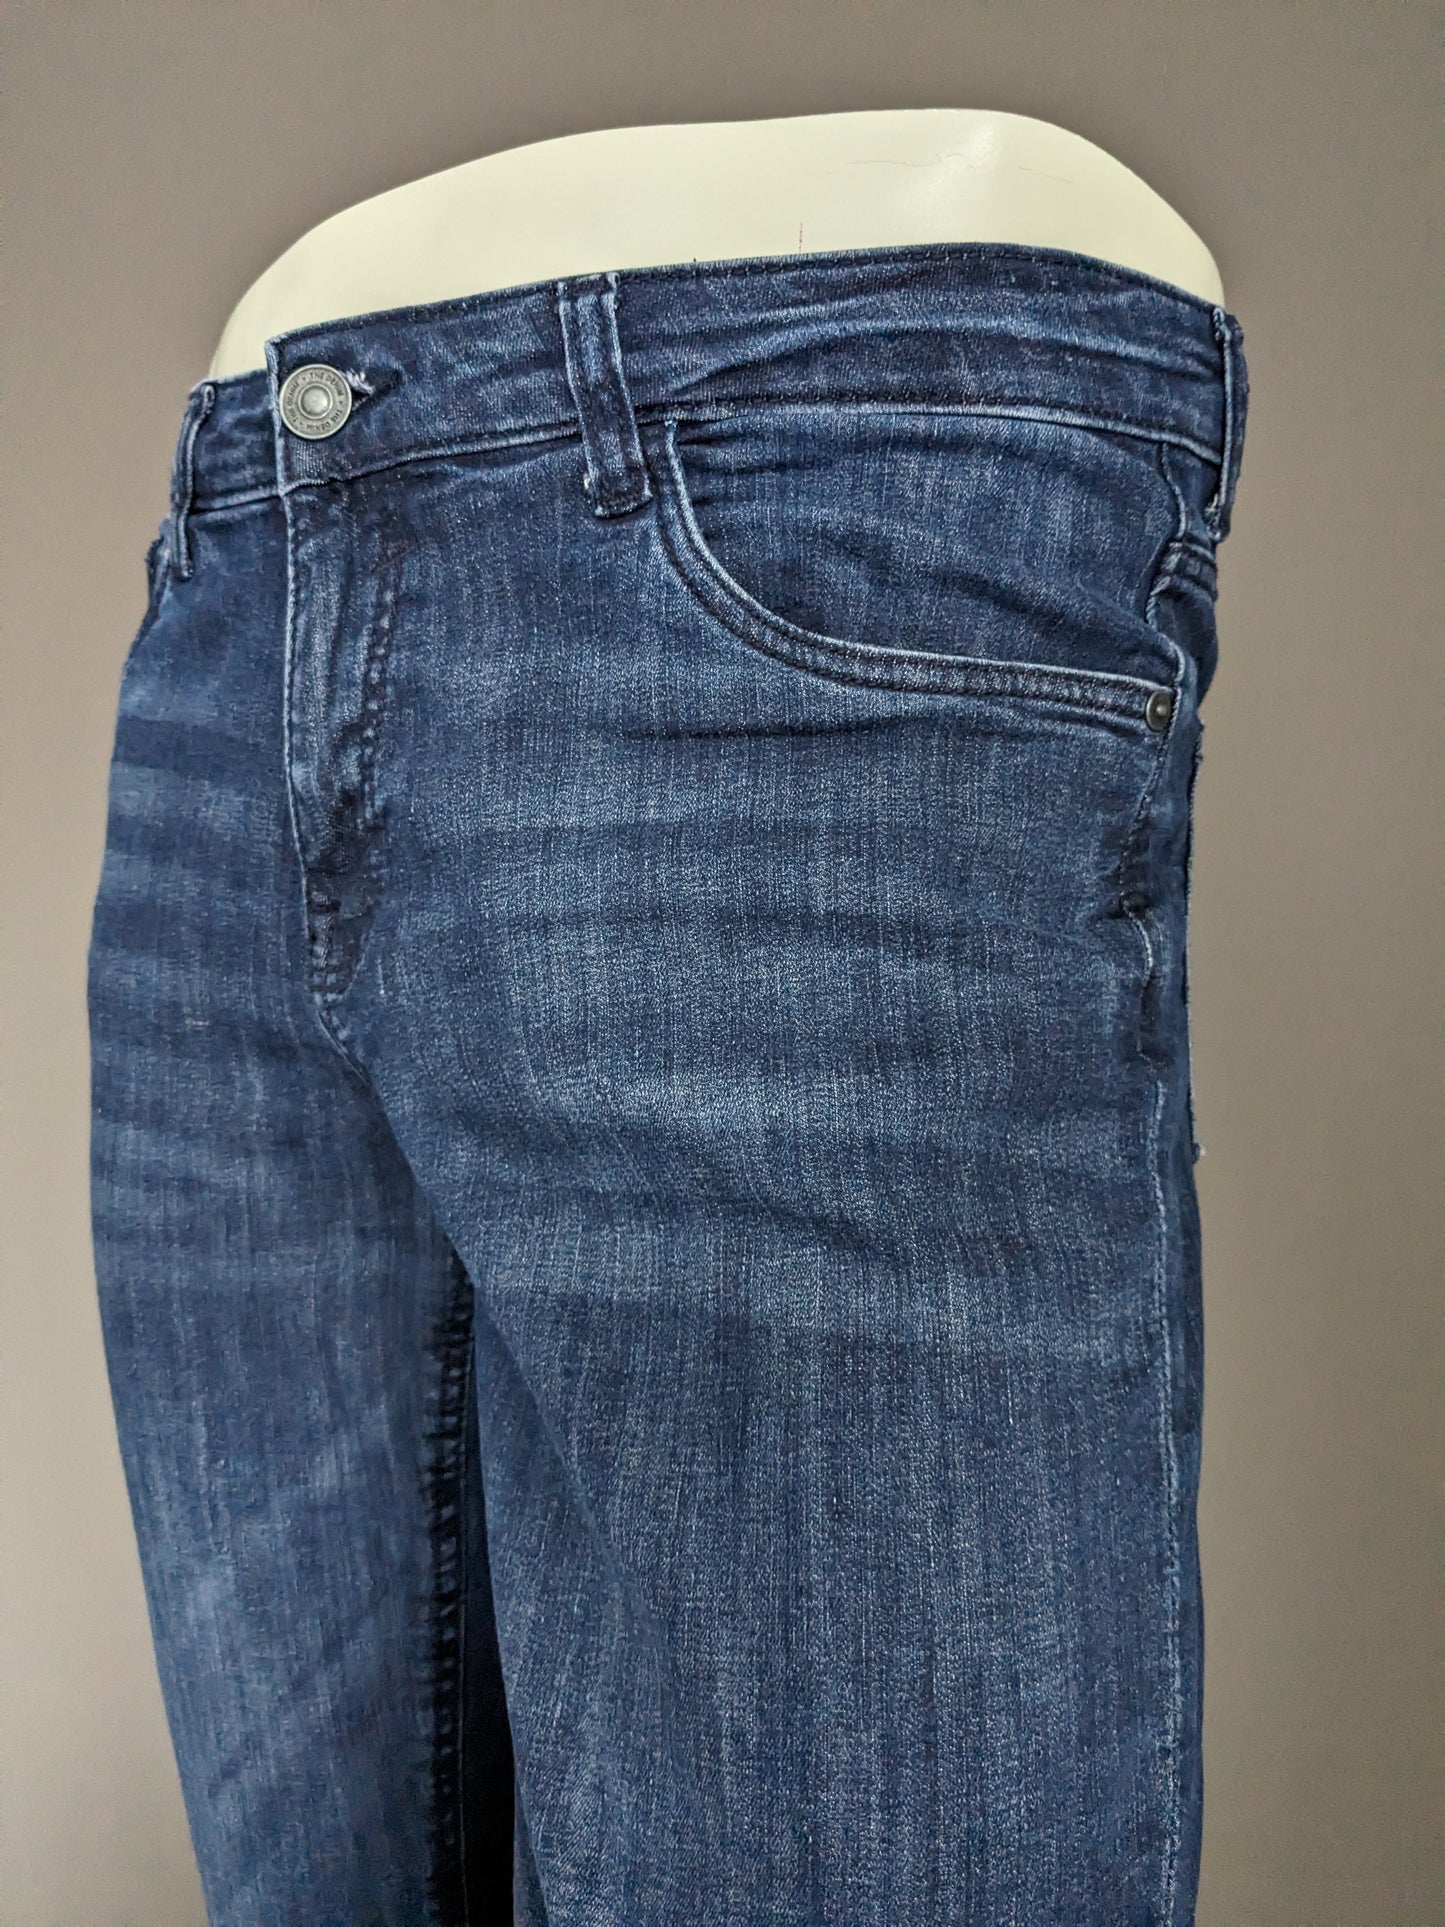 Jeans C&A. Blu scuro. W29 - L32. Allungo in fila dritto.